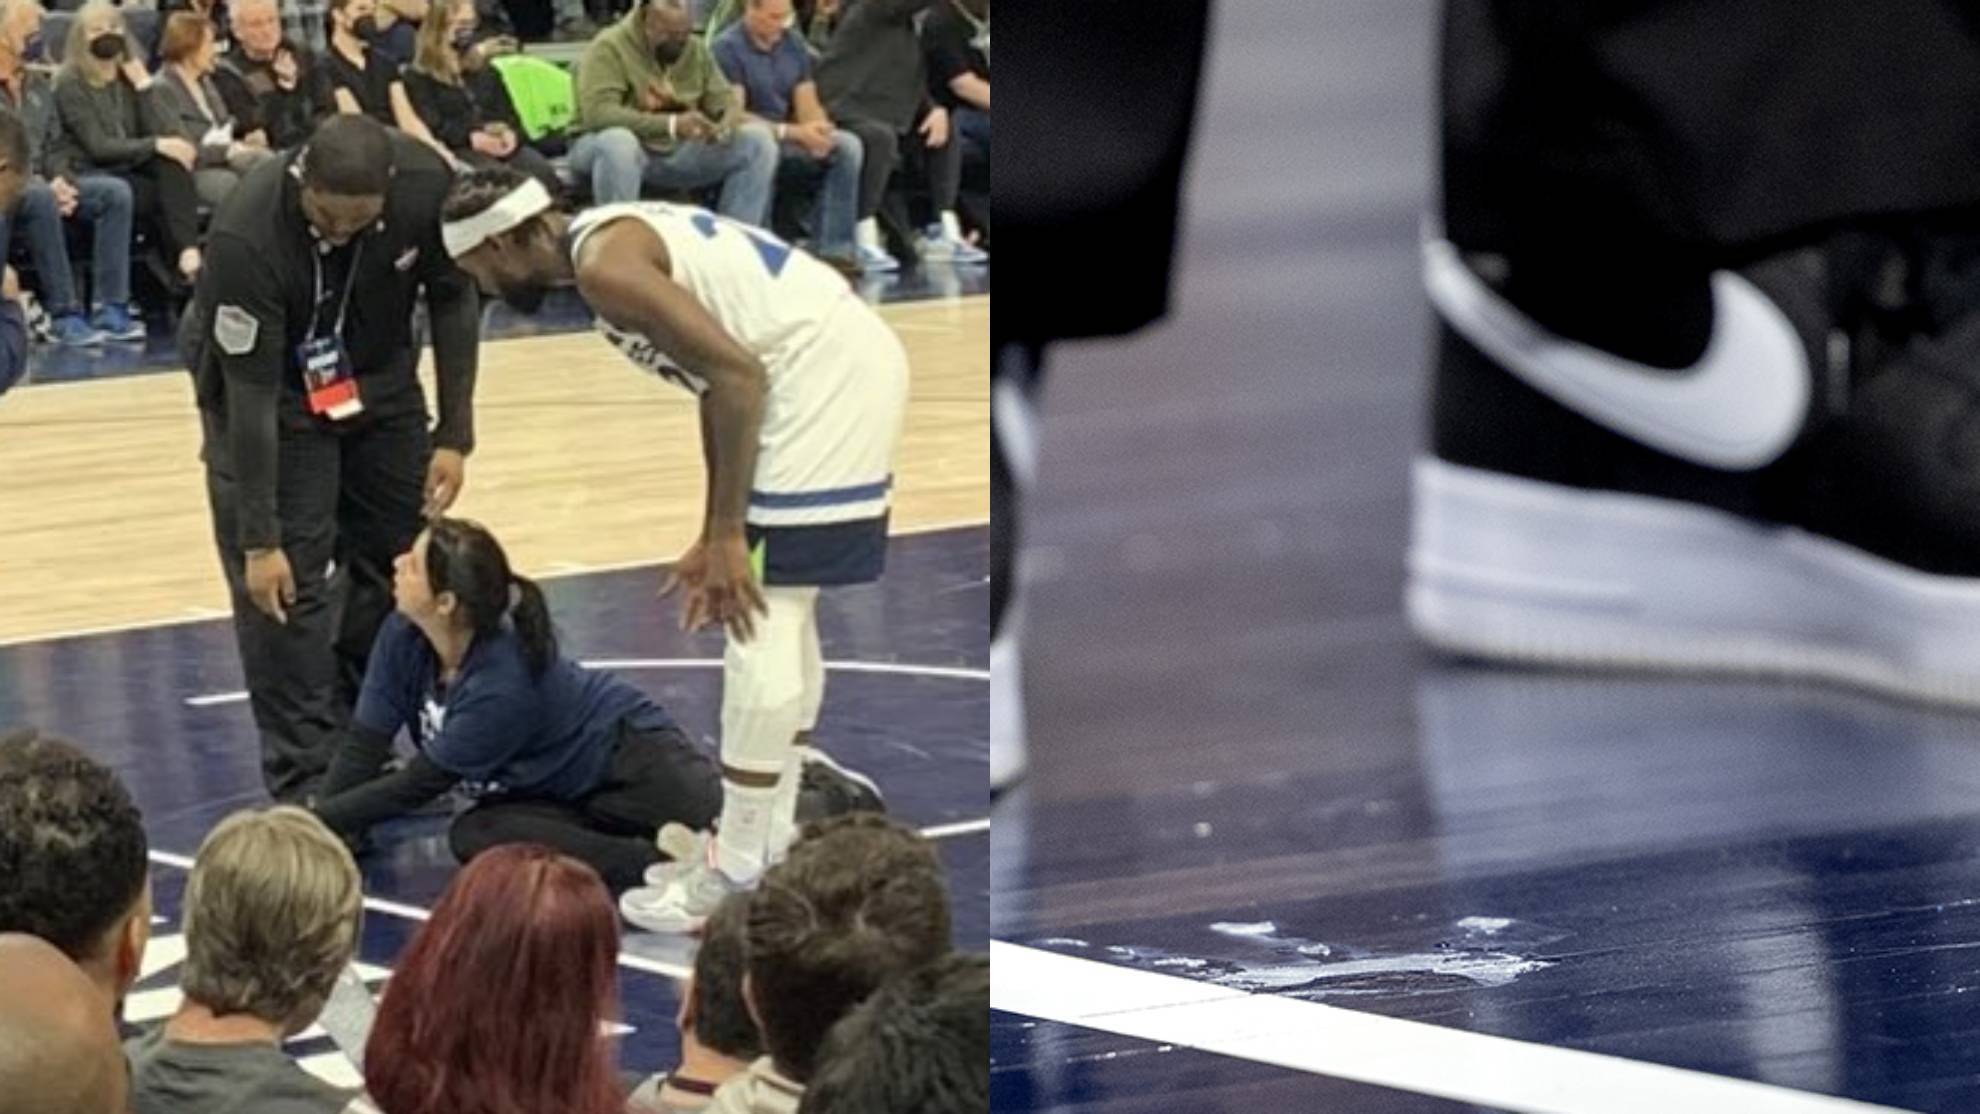 Imagen surrealista en la NBA: una aficionada intenta pegarse al parquet con pegamento en forma de protesta